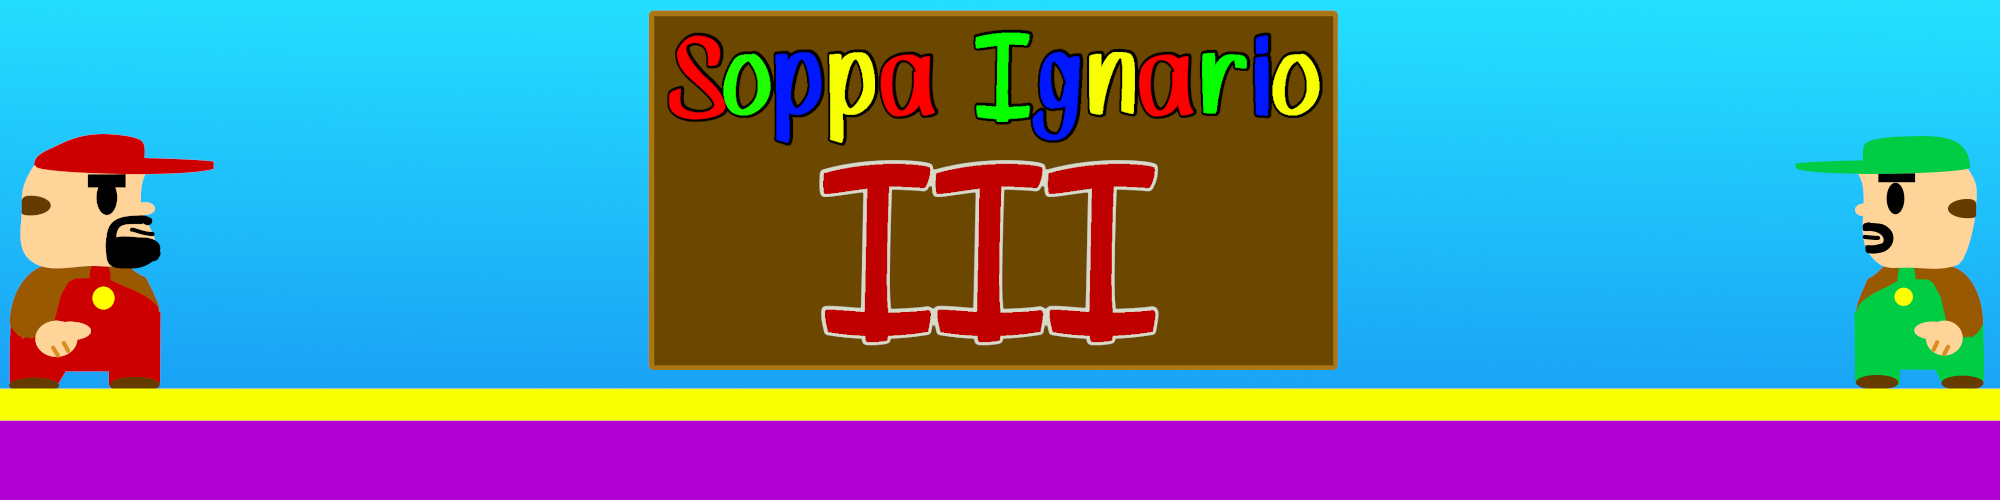 Soppa Ignario III - Early Access (Free To Play)